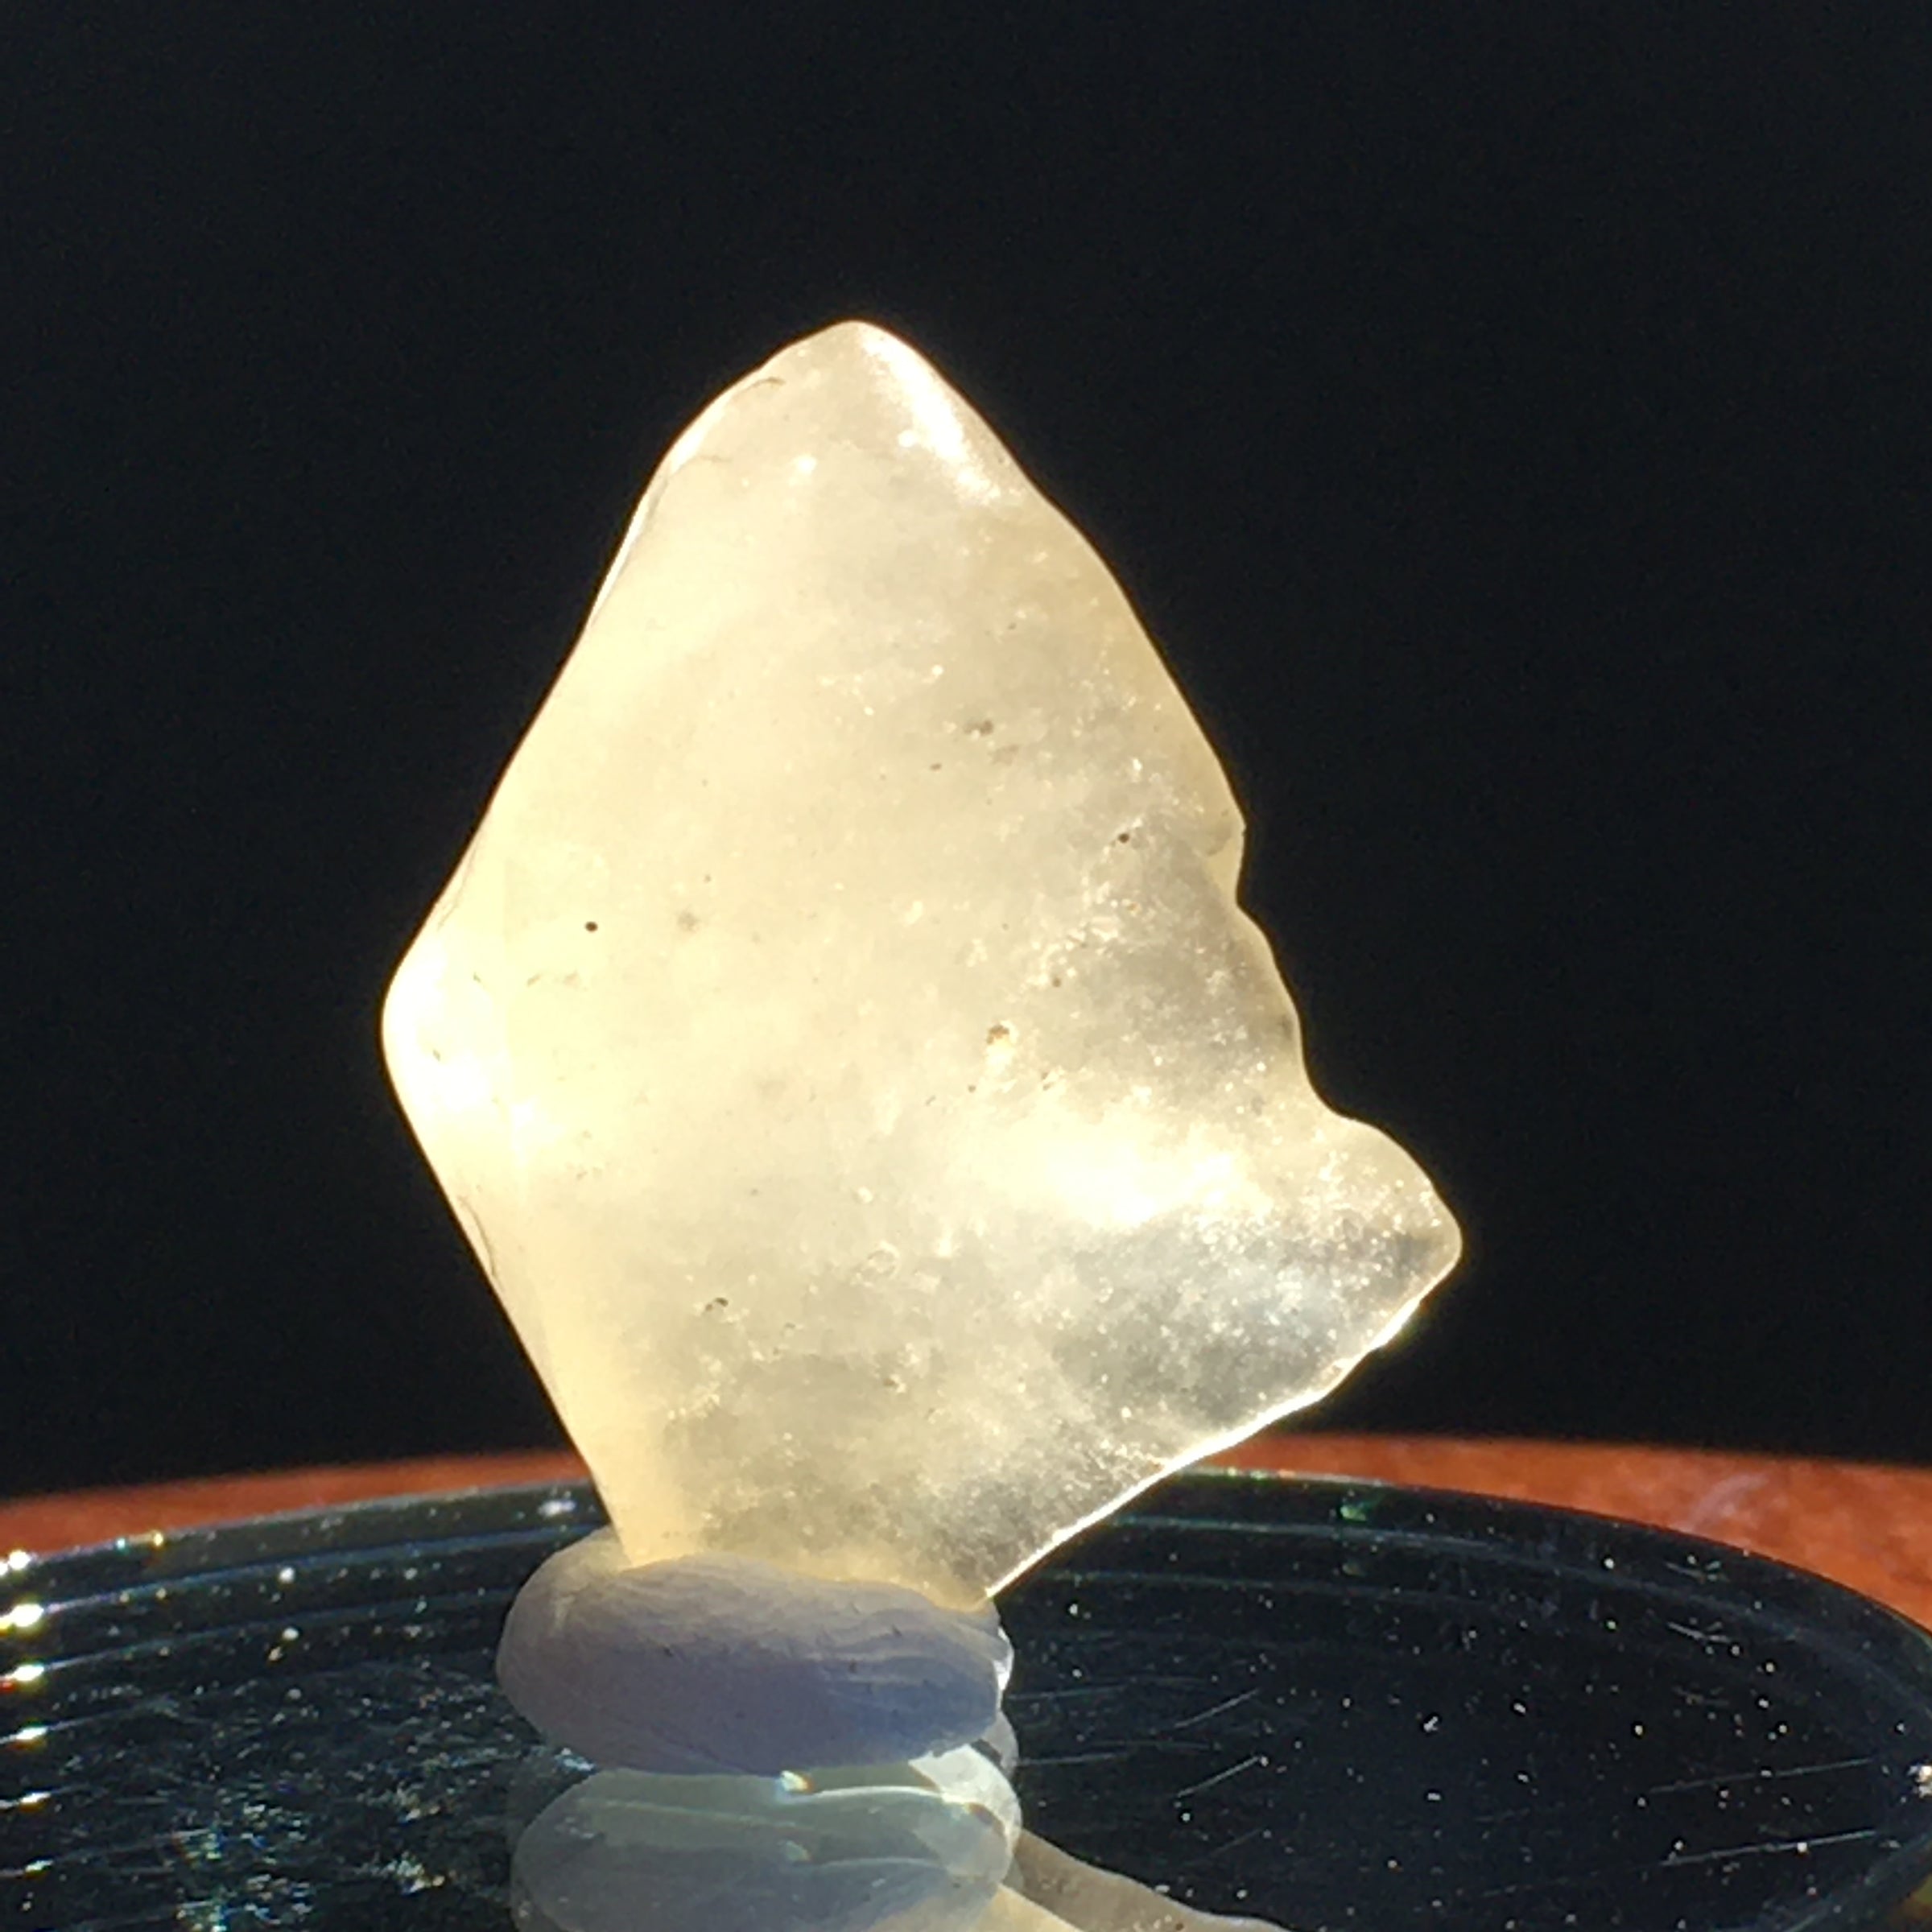 Libyan Desert Glass Tektite 3.7 Grams-Moldavite Life